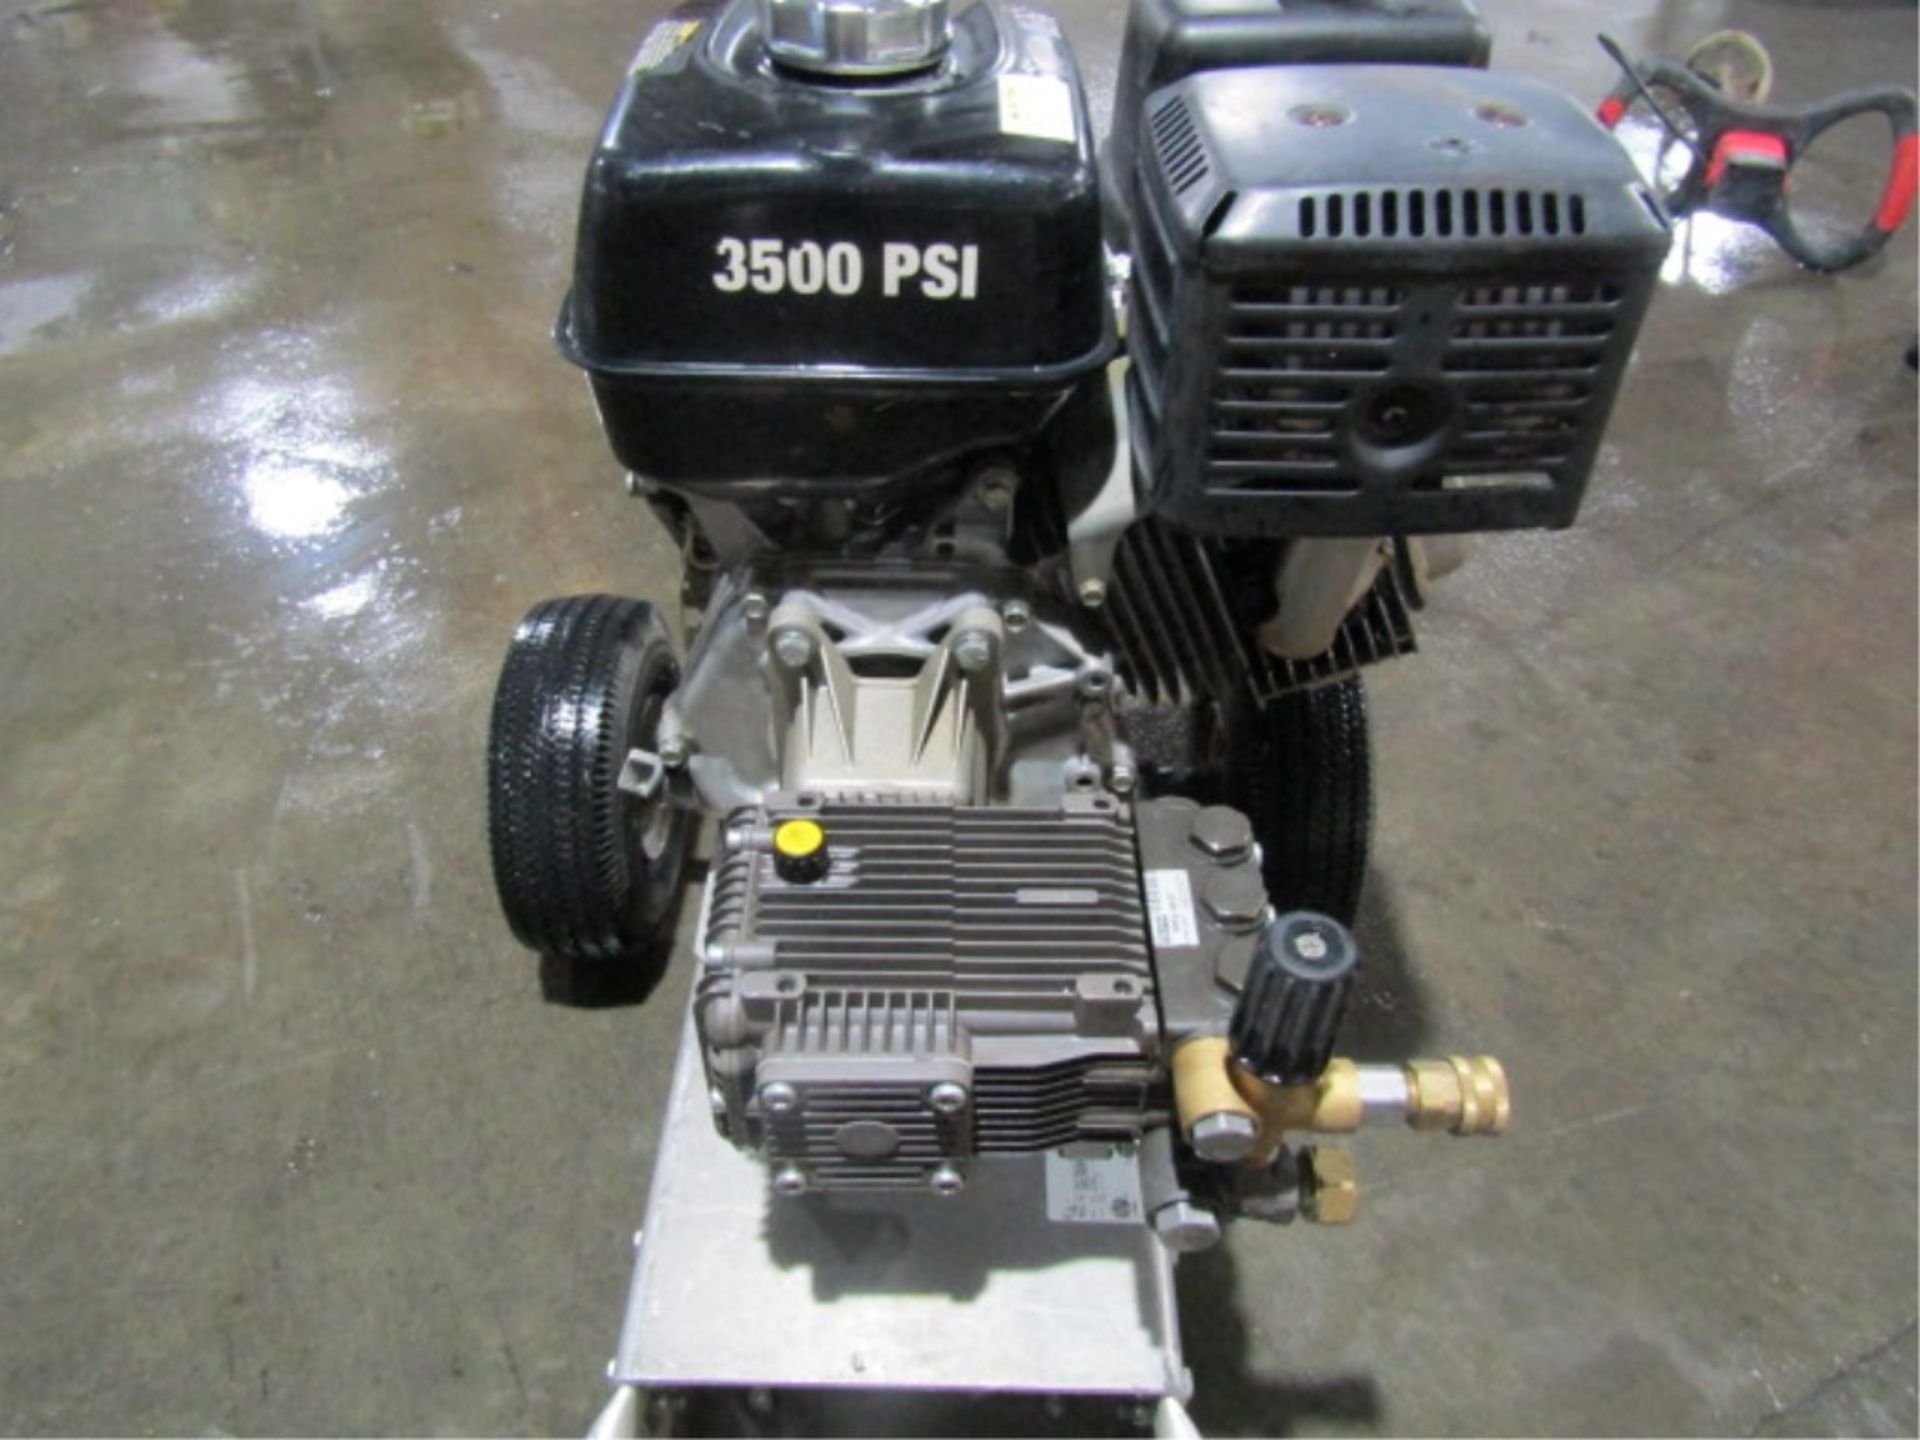 MTM CA-3504-0M4B Pressure Washer, Honda GX390, 3500 PSI, Serial #10536812 - Image 6 of 7